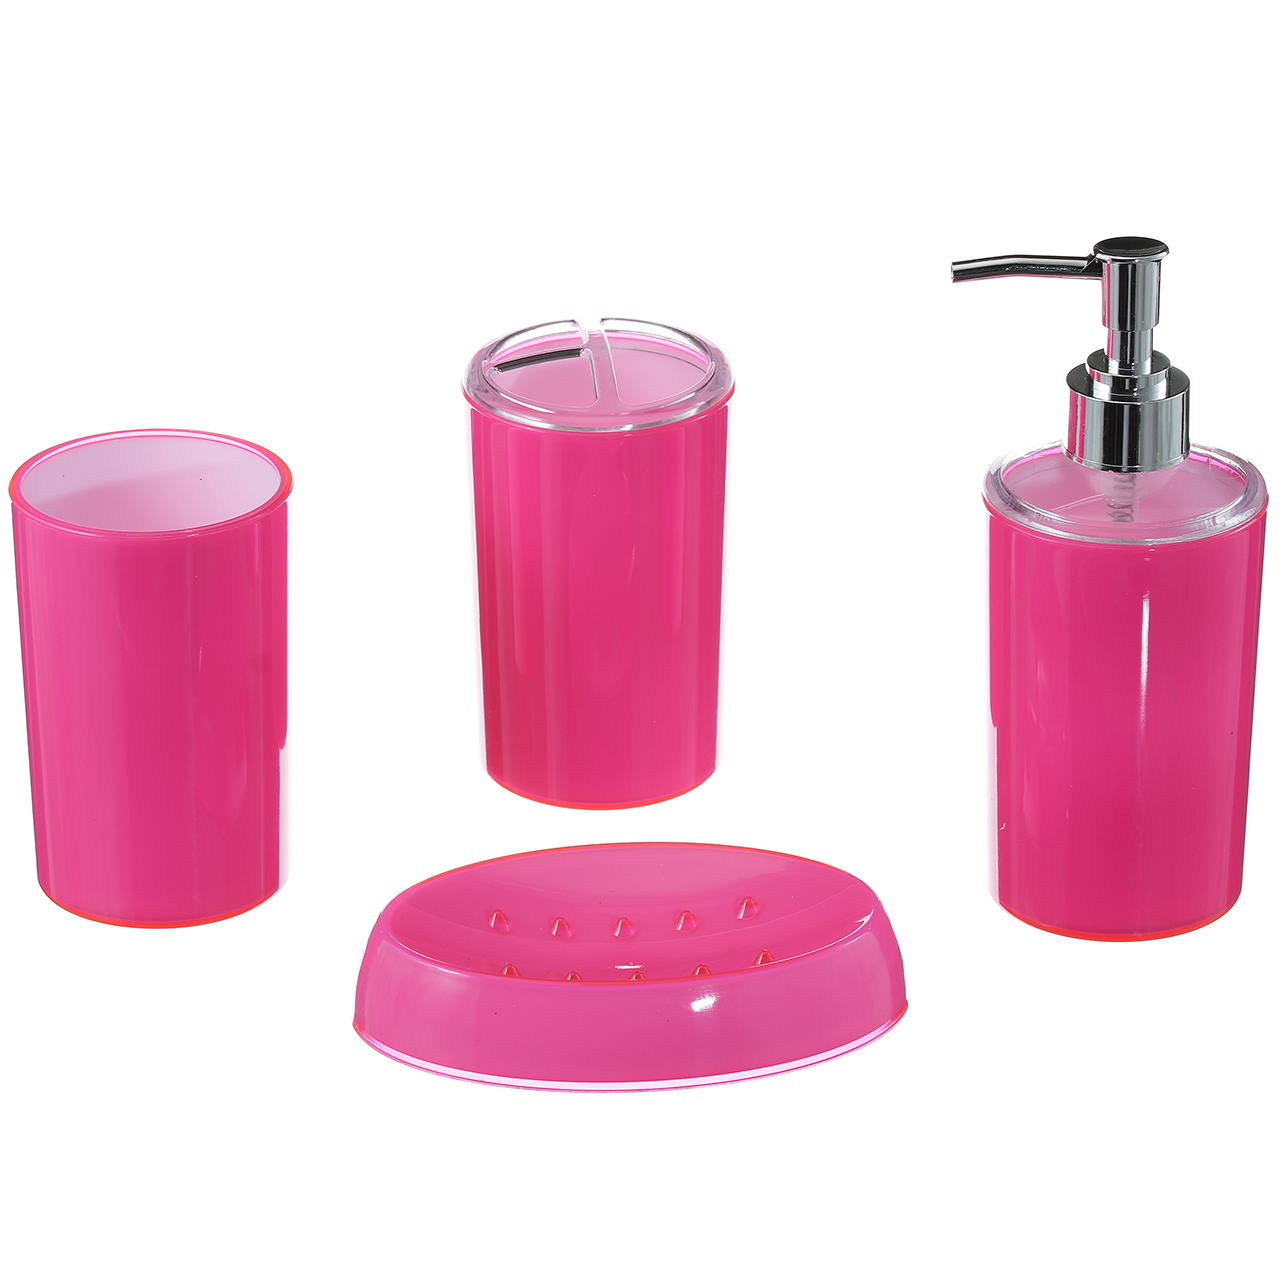 Акриловые наборы в ванну. Набор для ванной 4 предмета пластик розовый. Акриловые наборы для ванной. Набор для ванной комнаты "Клементе" фиолетовый 4 предмета.